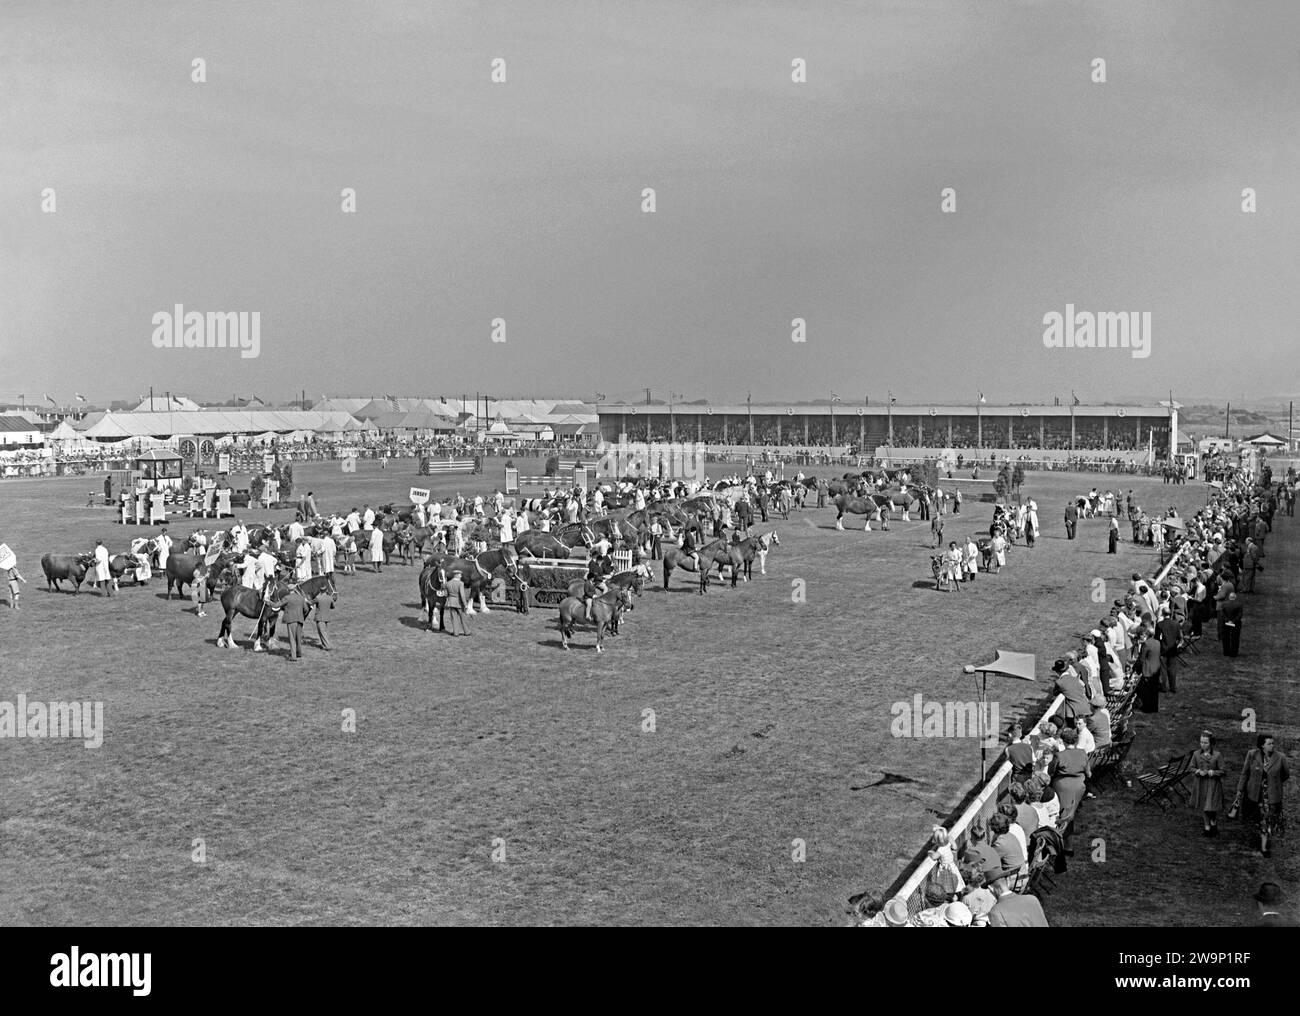 Auf der Royal Lancashire Show um 1960 reiteten sich die arbeitenden Pferde an, sowie kleinere Pferde mit Reitern und Rindern, die in der Hauptarena des Ausstellungsgeländes vorgeführt wurden. Hinter den Arbeitspferden befinden sich mehr Kühe – hochgehaltene Plakate zeigen an, dass es sich um Jersey- und Dairy Shorthorn-Rassen handelt. Die Royal Lancashire Show (RLS) ist eine Landwirtschaftsshow, die jedes Jahr in Lancashire, England, stattfindet. Die Show wird von der Royal Lancashire Agricultural Society (RLAS) organisiert und ist eine der ältesten in Großbritannien, die erstmals 1767 stattfindet. Von 1954 bis 1972 fand die Show im Stanley Park in Blackpool statt – ein Vintage-Foto aus den 1950er/60er Jahren. Stockfoto